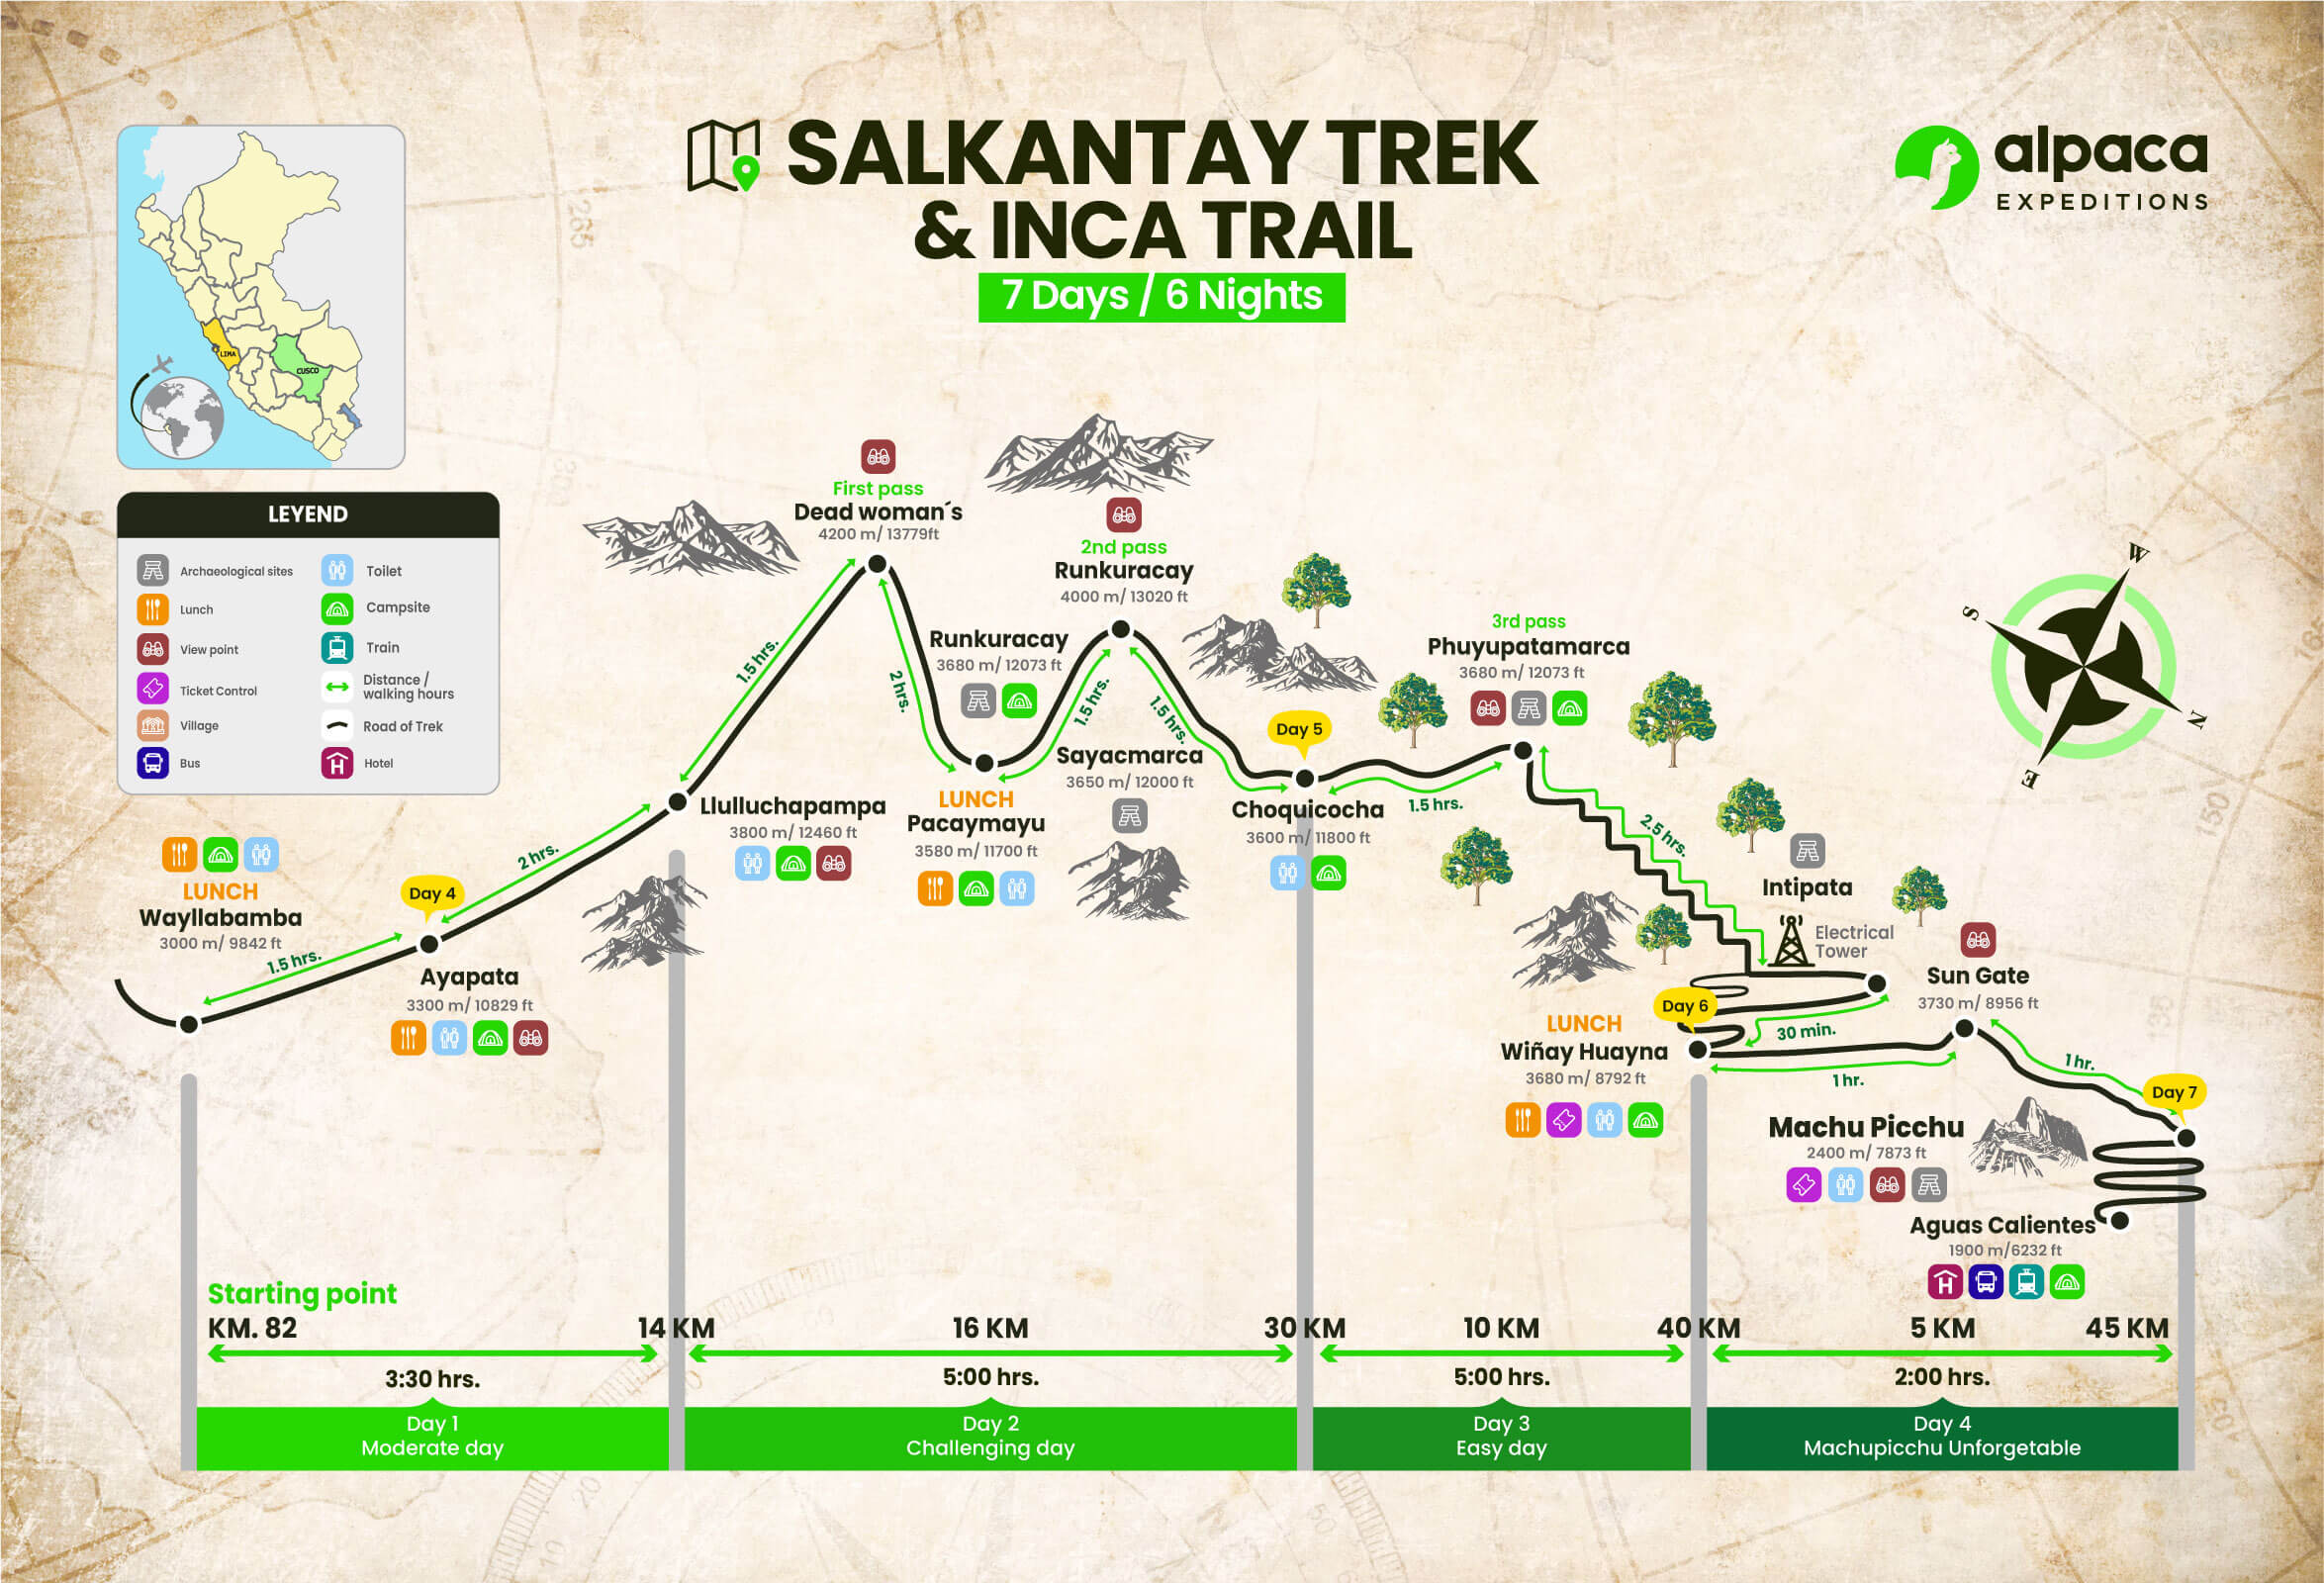 Salkantay Tour & Inca Trail 7D/6N